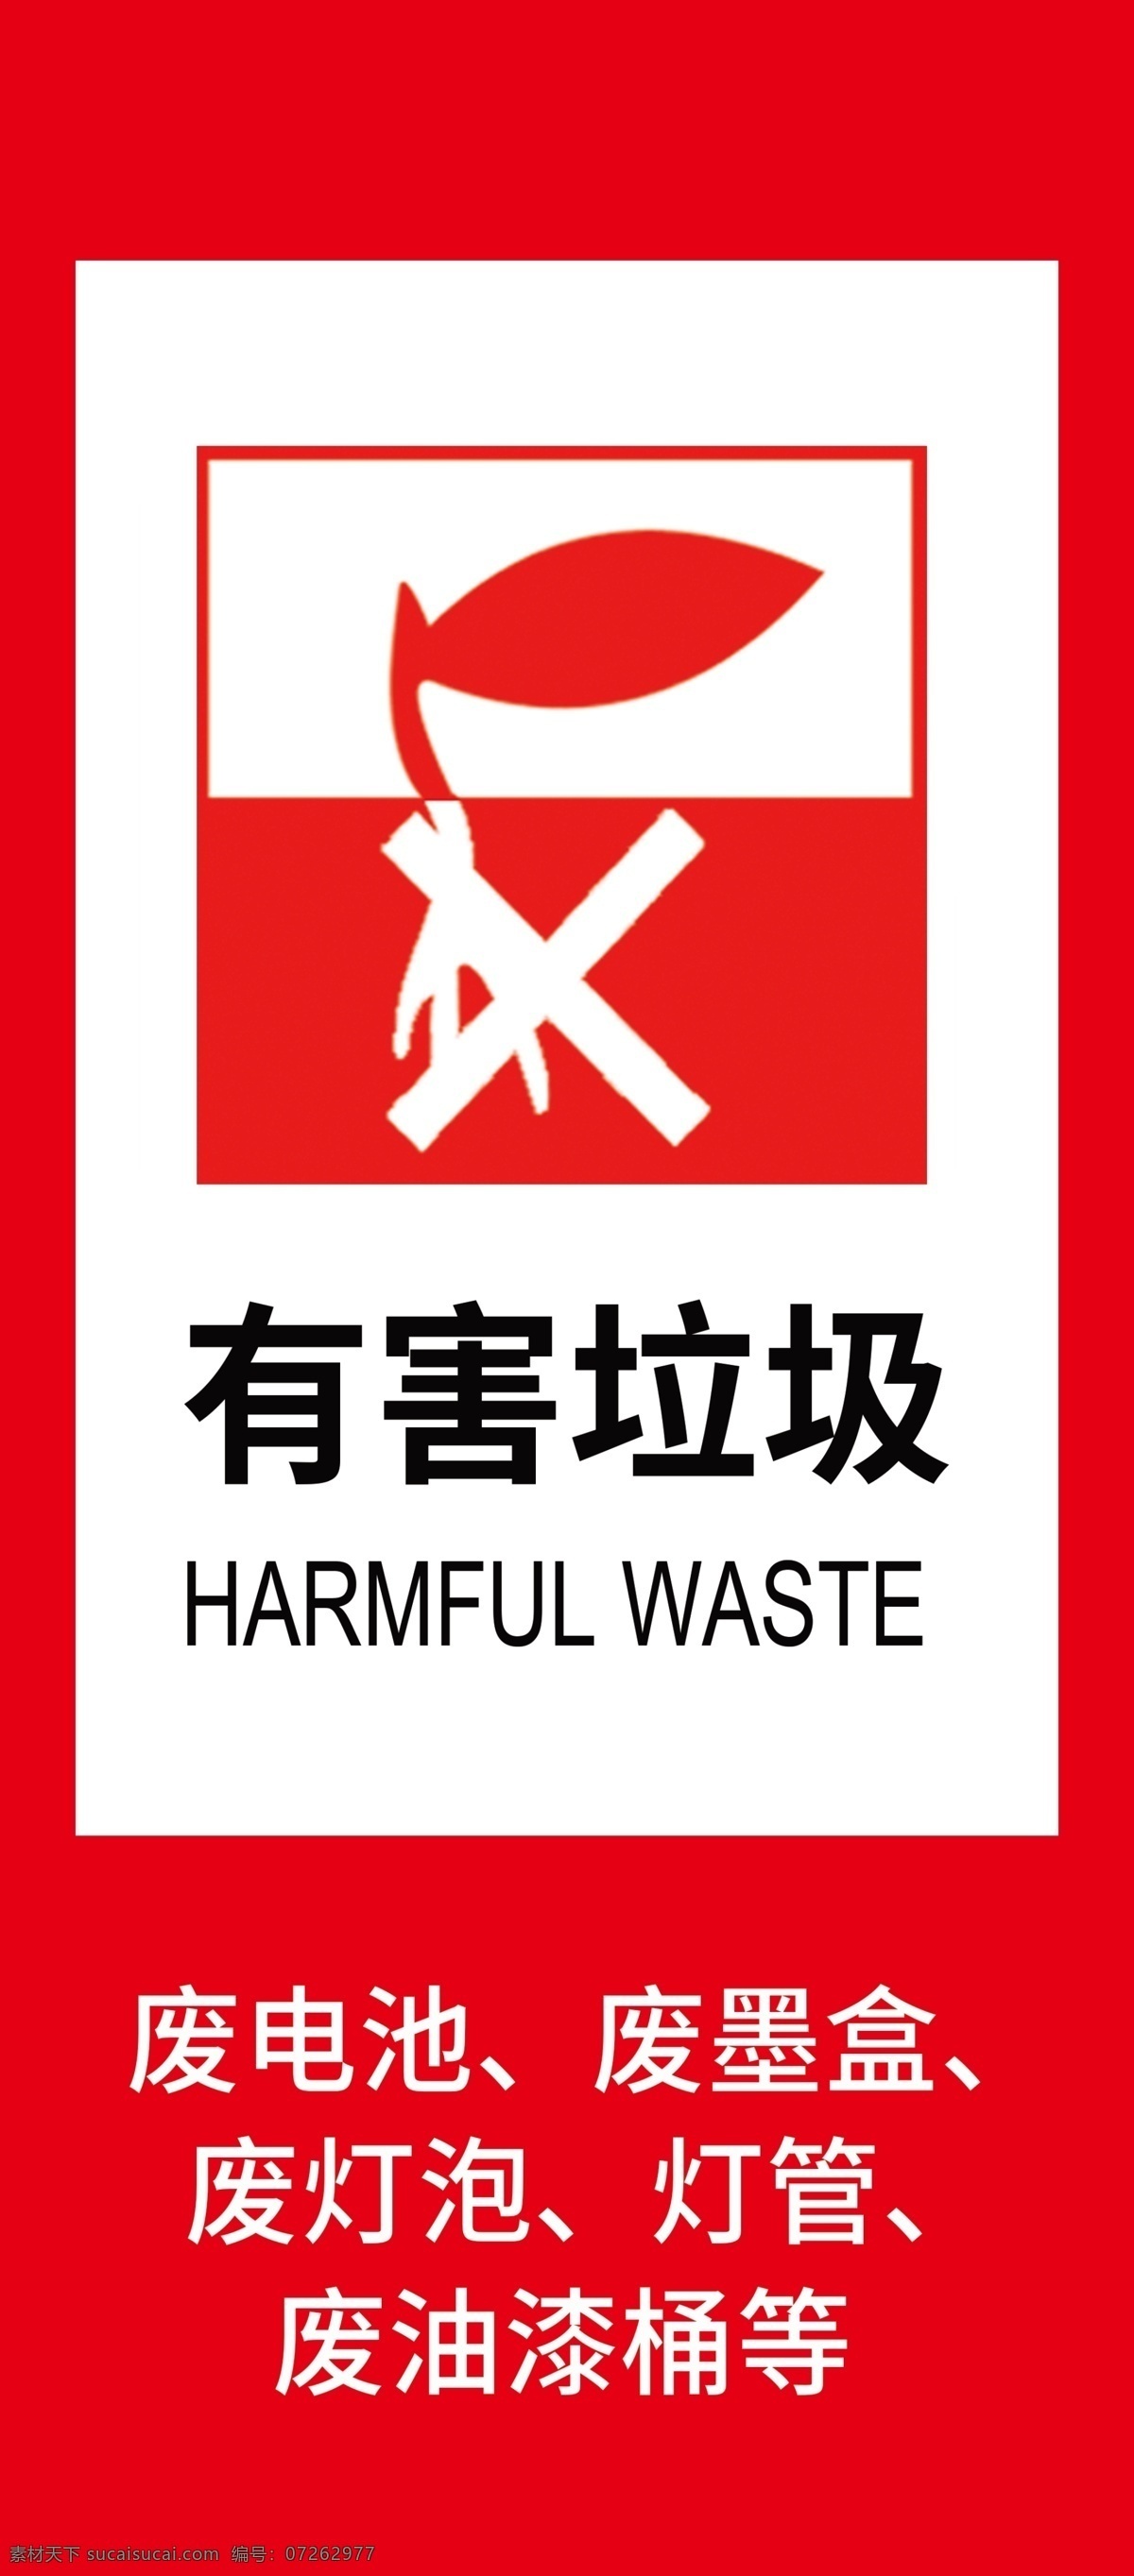 公共标识 垃圾分类 有害 垃圾 垃圾桶标识 环境保护 废电池 分层